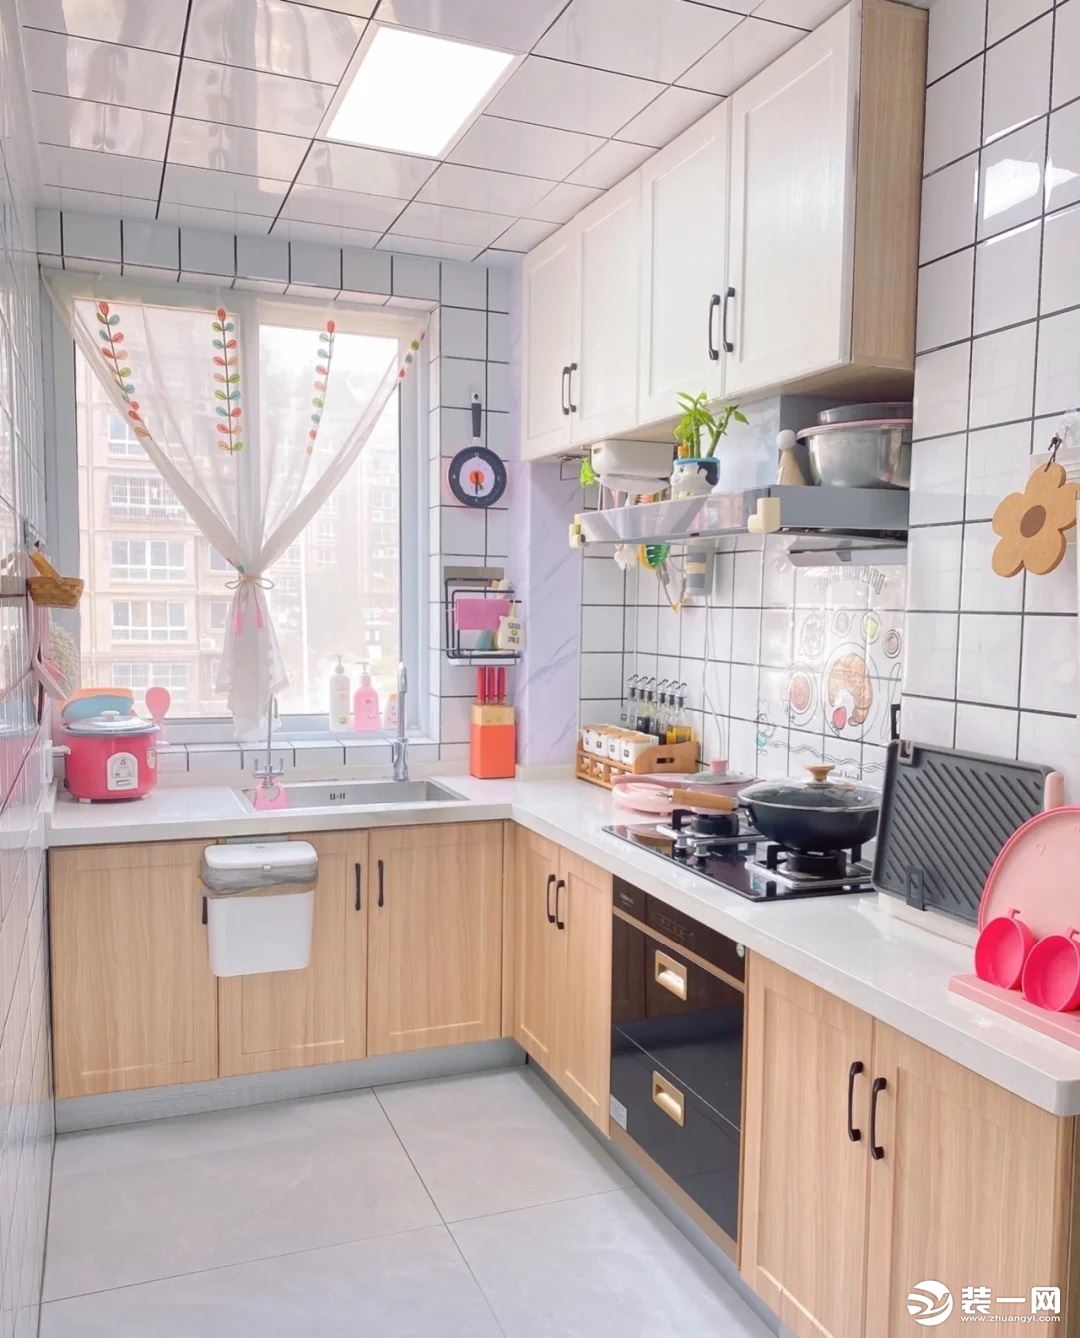 厨房空间属于狭长，L型 橱柜设计 ，最大限度的增加收纳空间，也是小户型厨房作为首选的形式，洗-切-炒